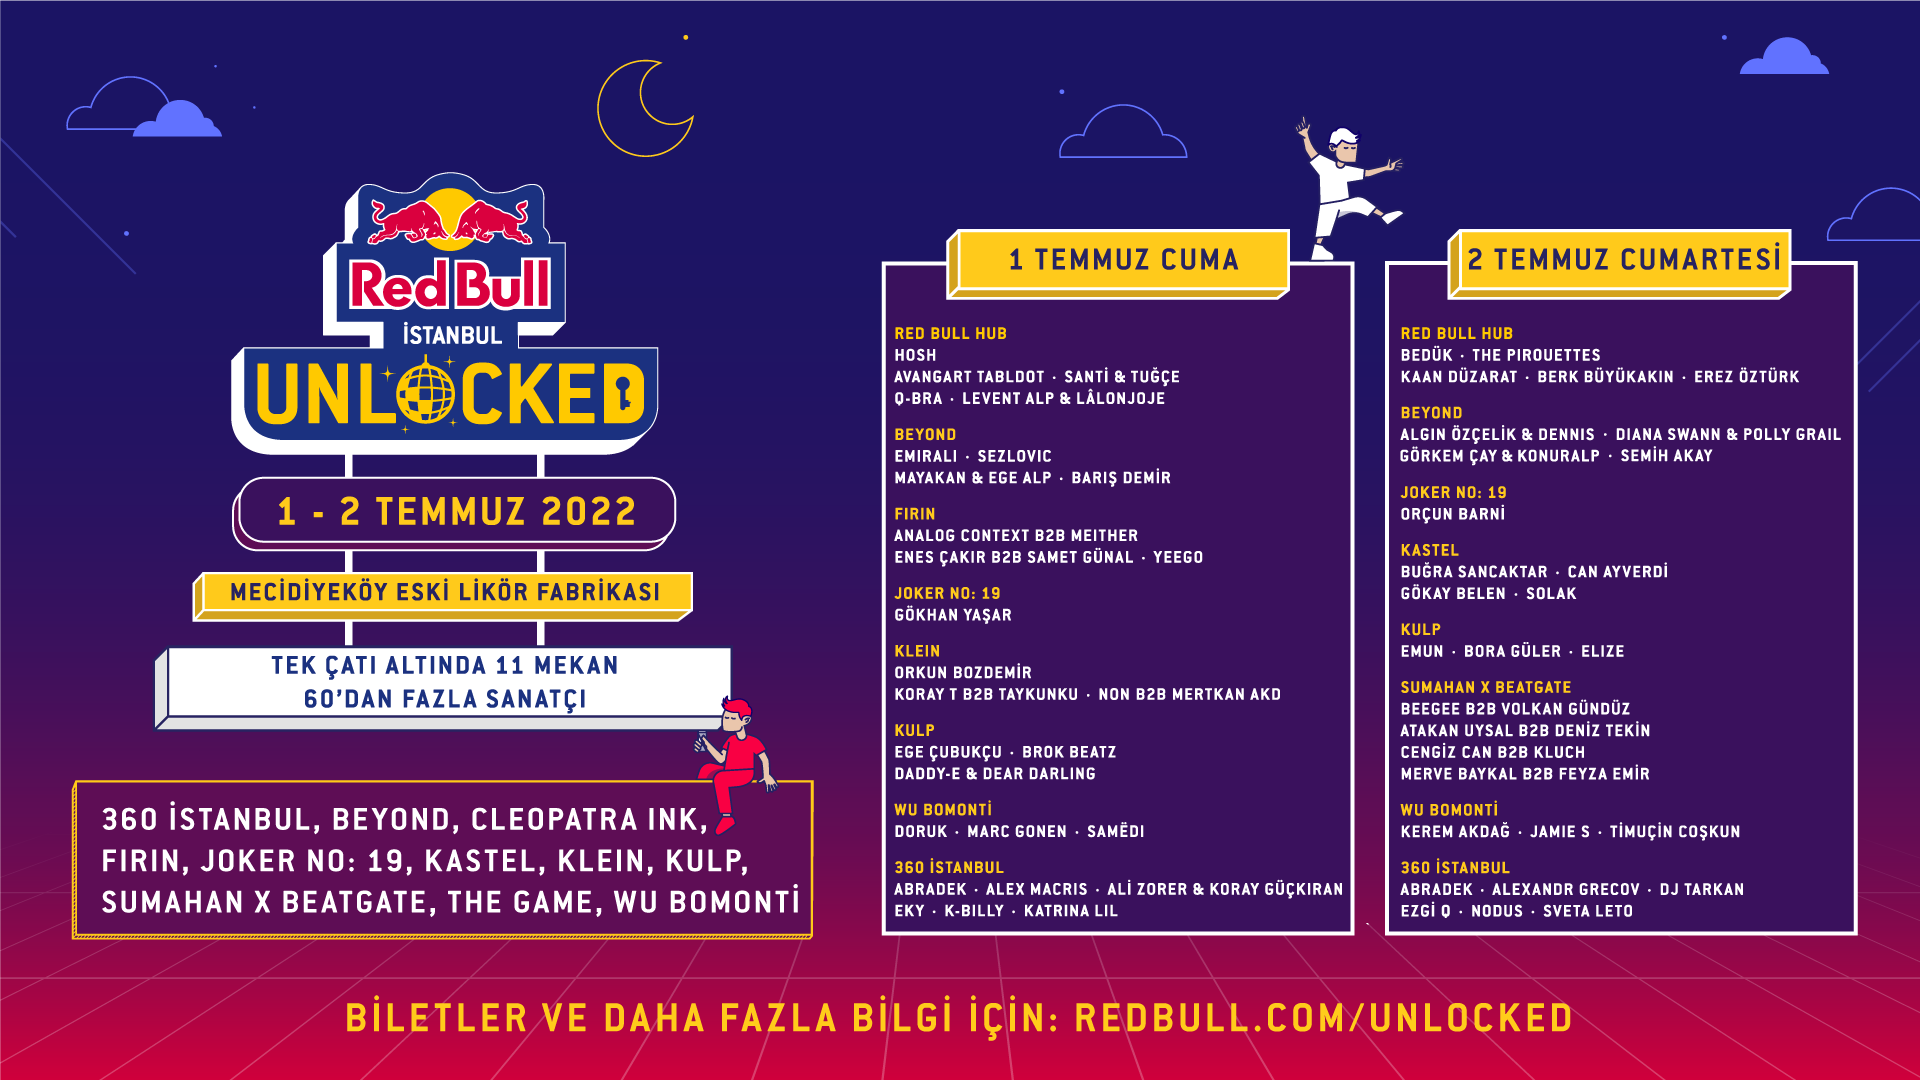 Link papir sæt Red Bull İstanbul Unlocked ile kesintisiz müzik keyfi başlıyor! - KÜLTÜR .İSTANBUL